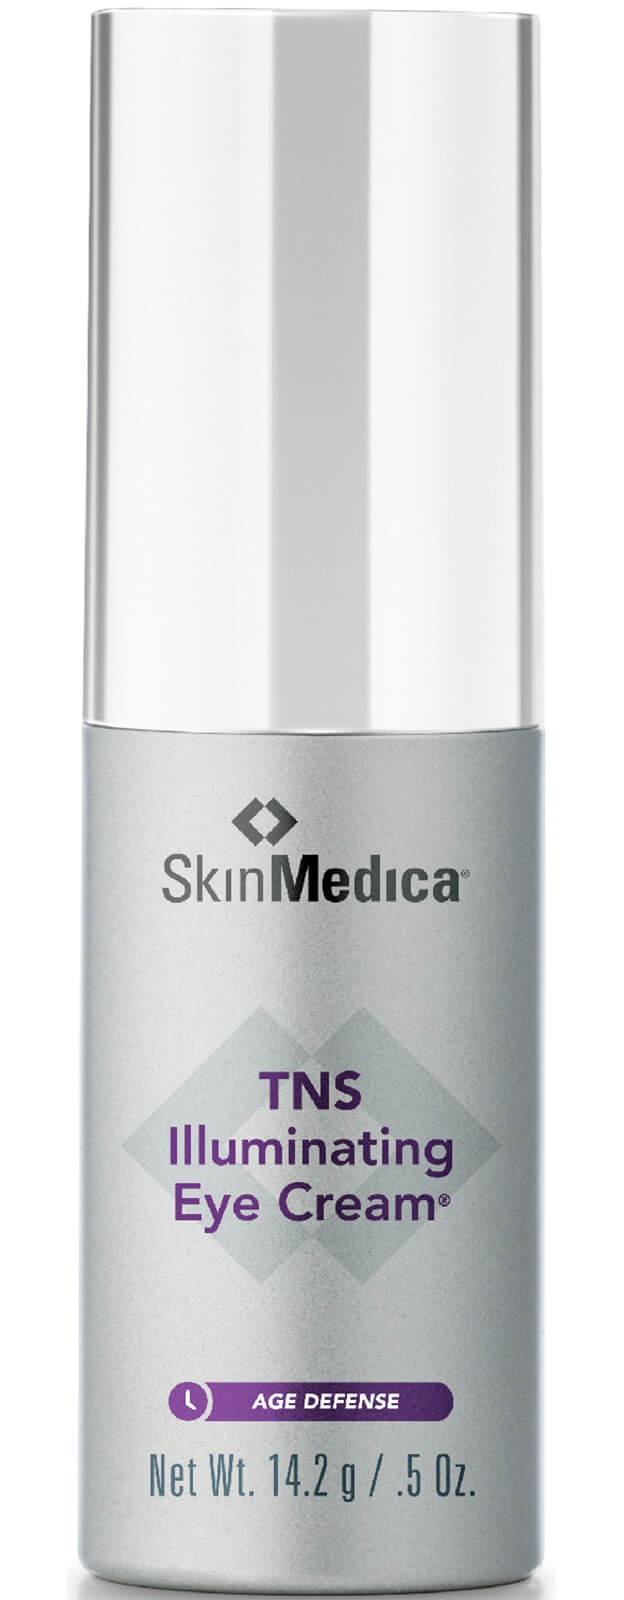 SkinMedica Tns Illuminating Eye Cream